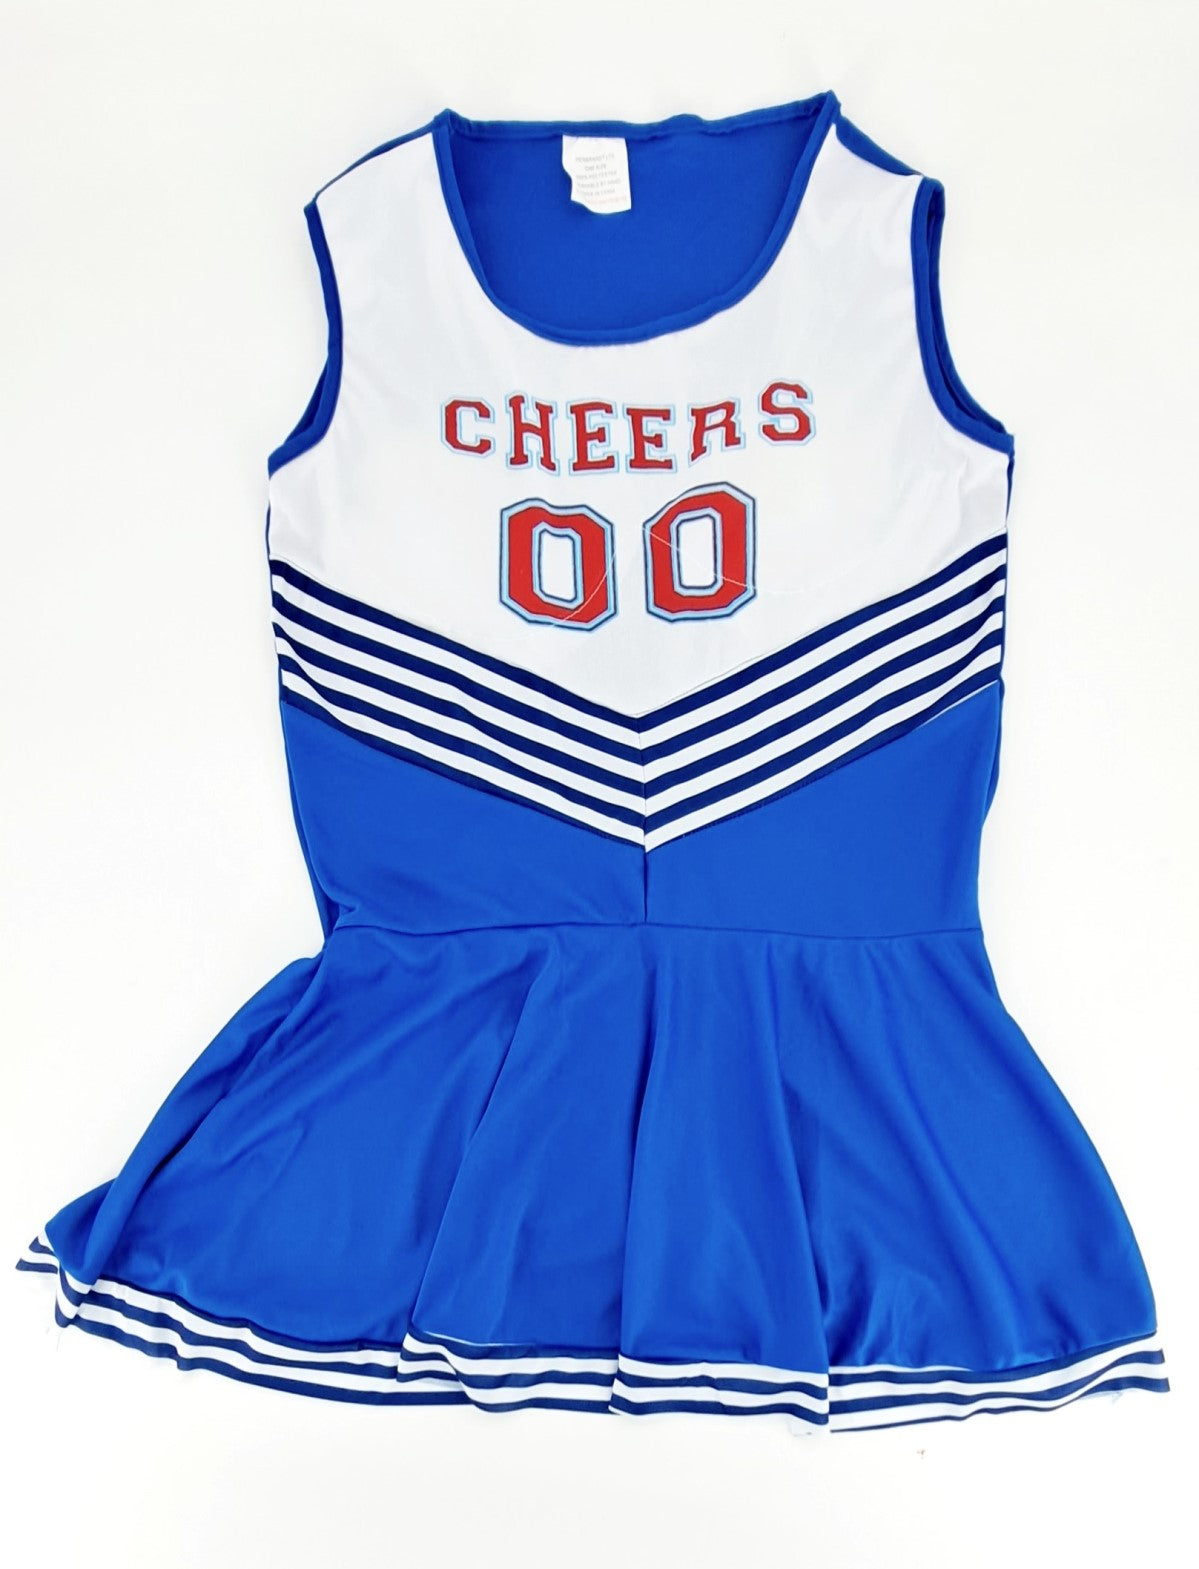 Adult Men’s Cheerleader Fancy Dress